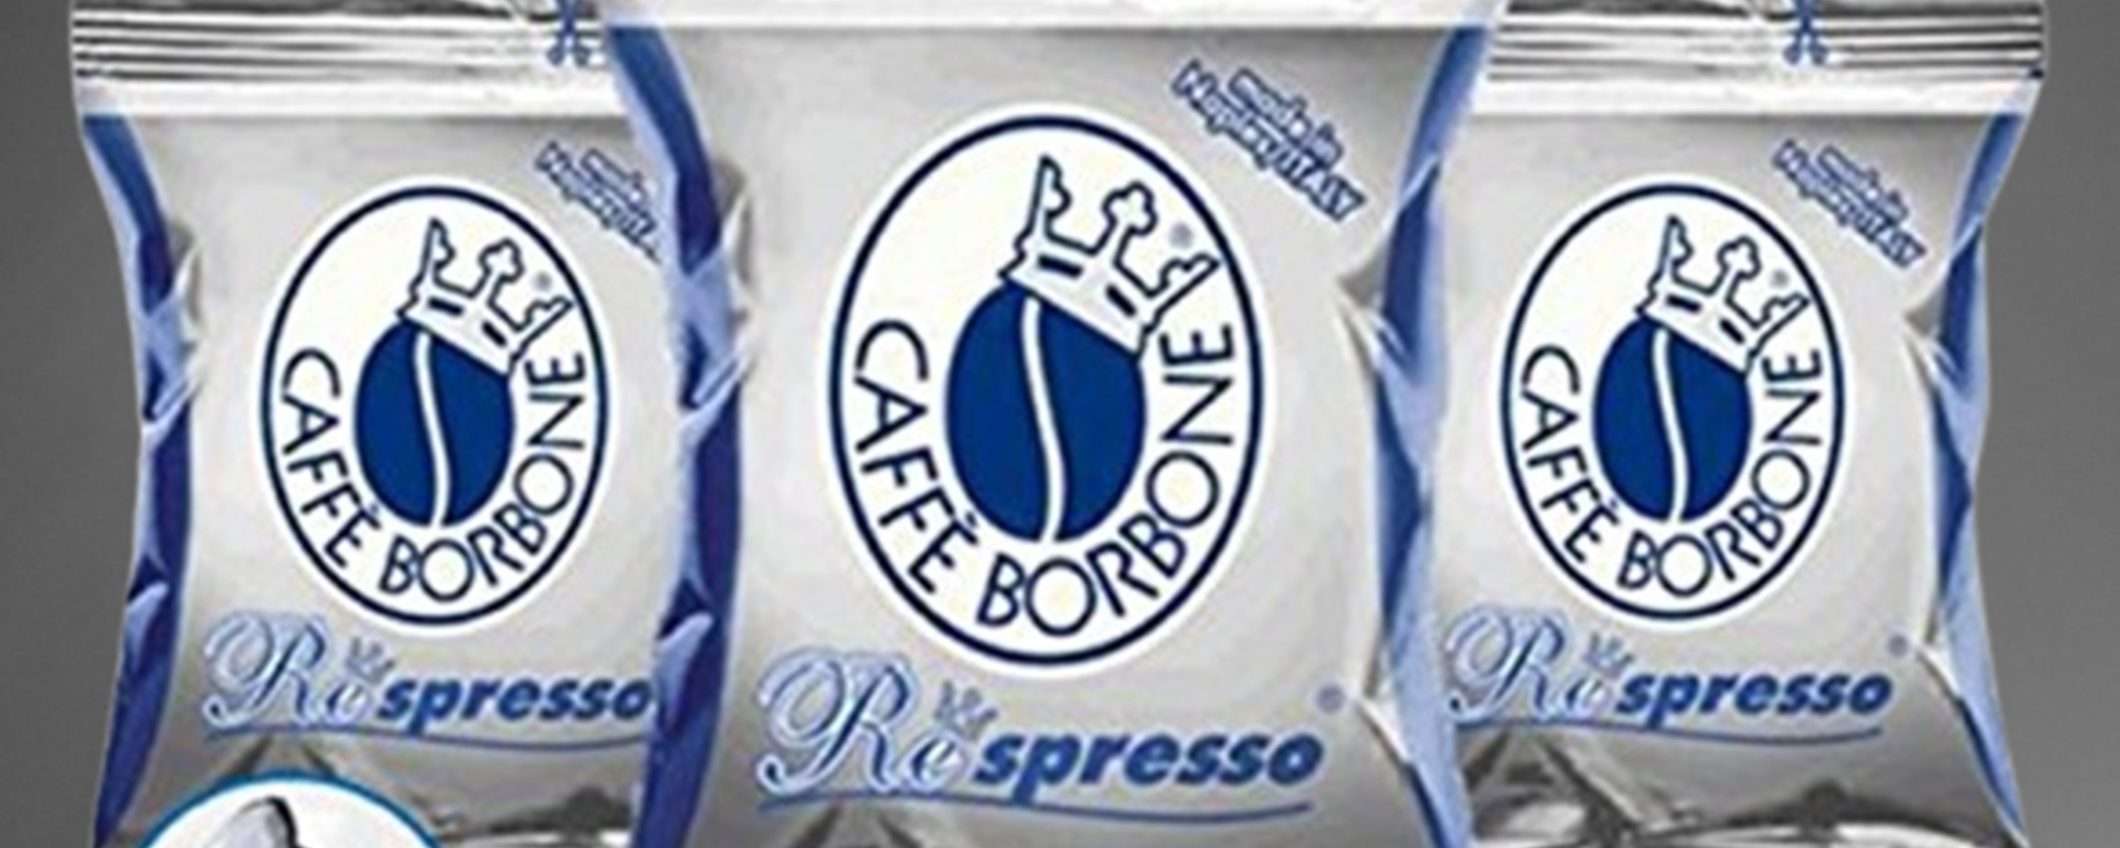 100 capsule Caffè Borbone Respresso miscela Blu a un prezzo WOW su eBay